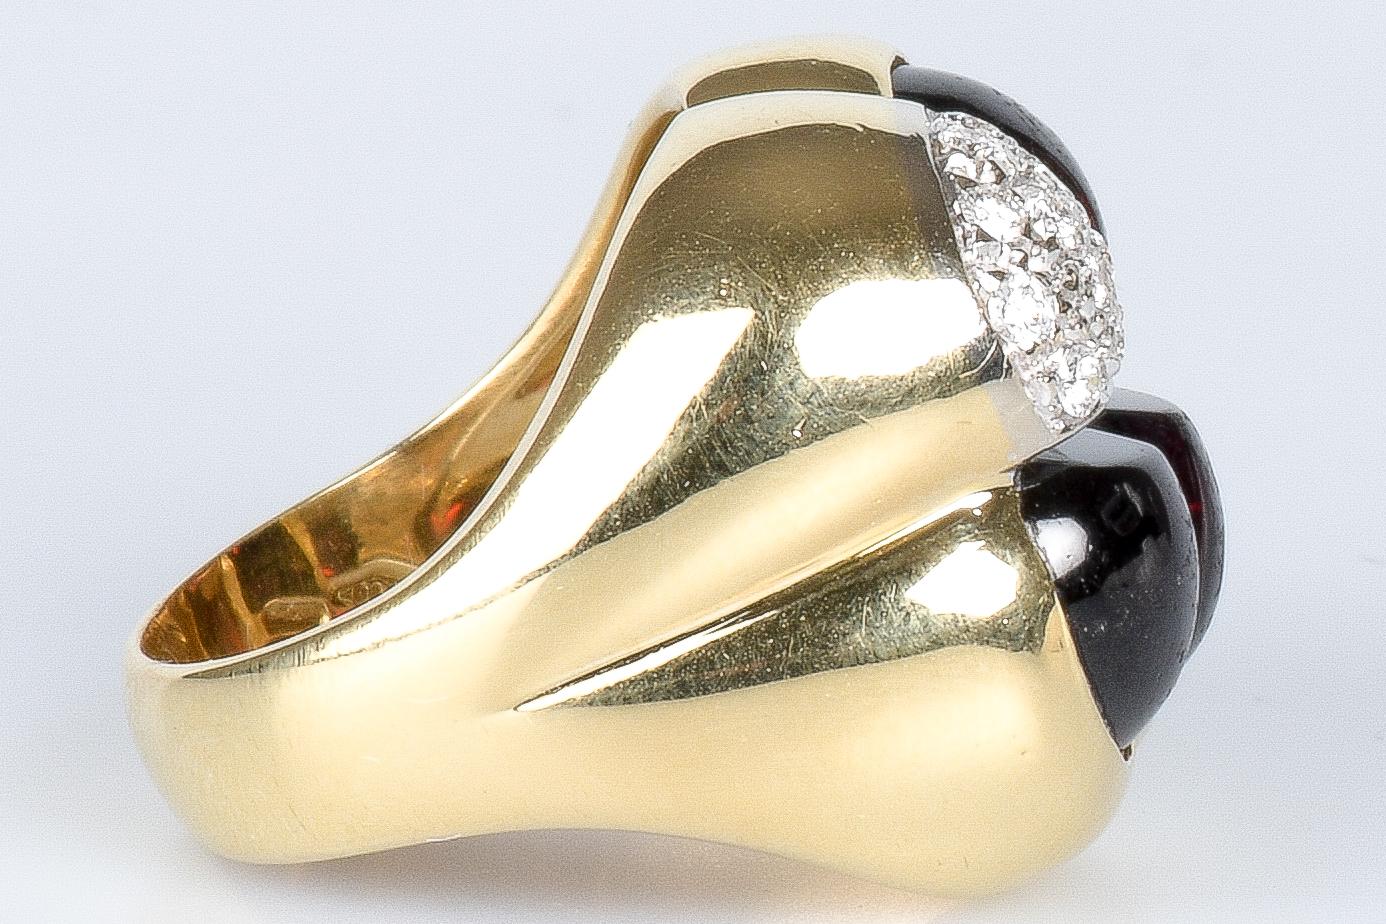  Dieser Ring aus 18 Karat Gold ist ein exquisites Schmuckstück, das Glück und Raffinesse ausstrahlt. Verziert mit 13 runden Diamanten mit einem Gewicht von je 0,024 Karat, insgesamt 0,312 Karat. Und 3 Bernsteine im Granatschliff. Das vierblättrige